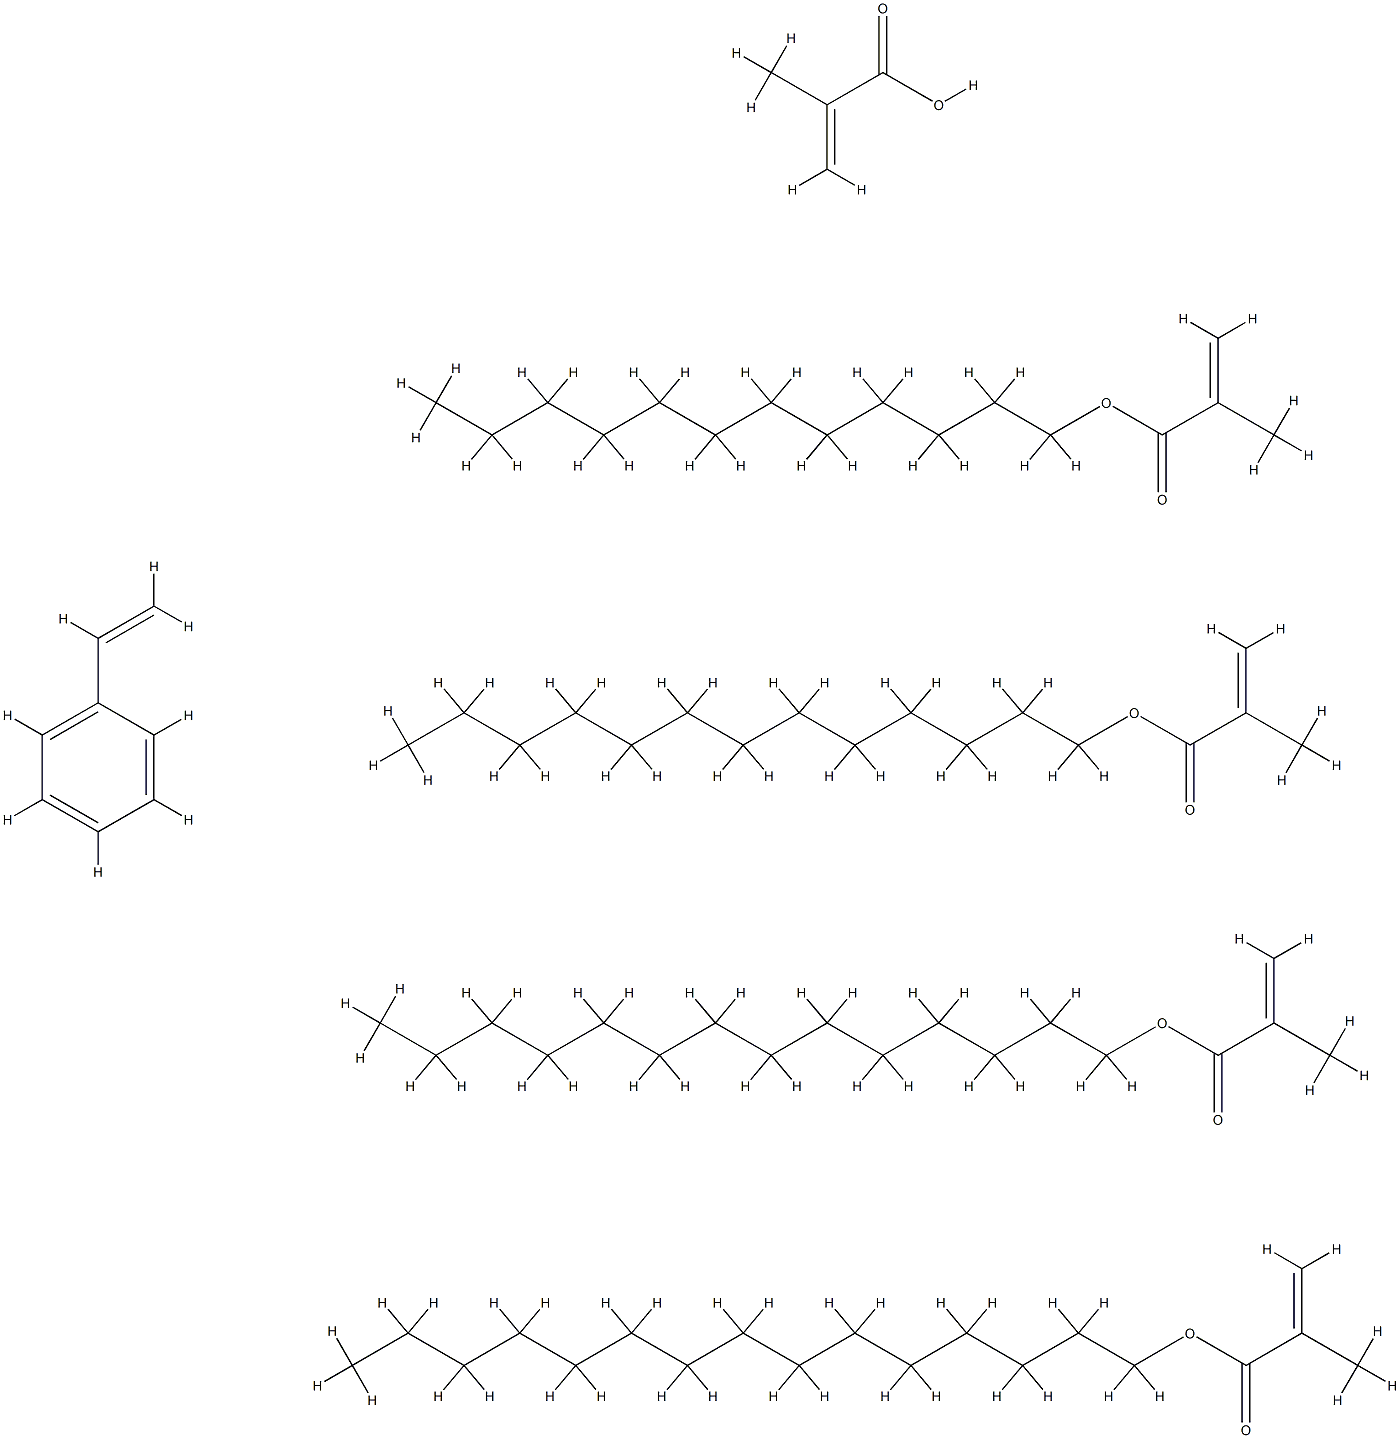 2-프로펜산,2-메틸-,도데실2-메틸-2-프로페노에이트,에테닐벤젠,펜타데실2-메틸-2-프로페노에이트,테트라데실2-메틸-2-프로페노에이트및트리데실2-메틸-2-프로페노에이트와의중합체